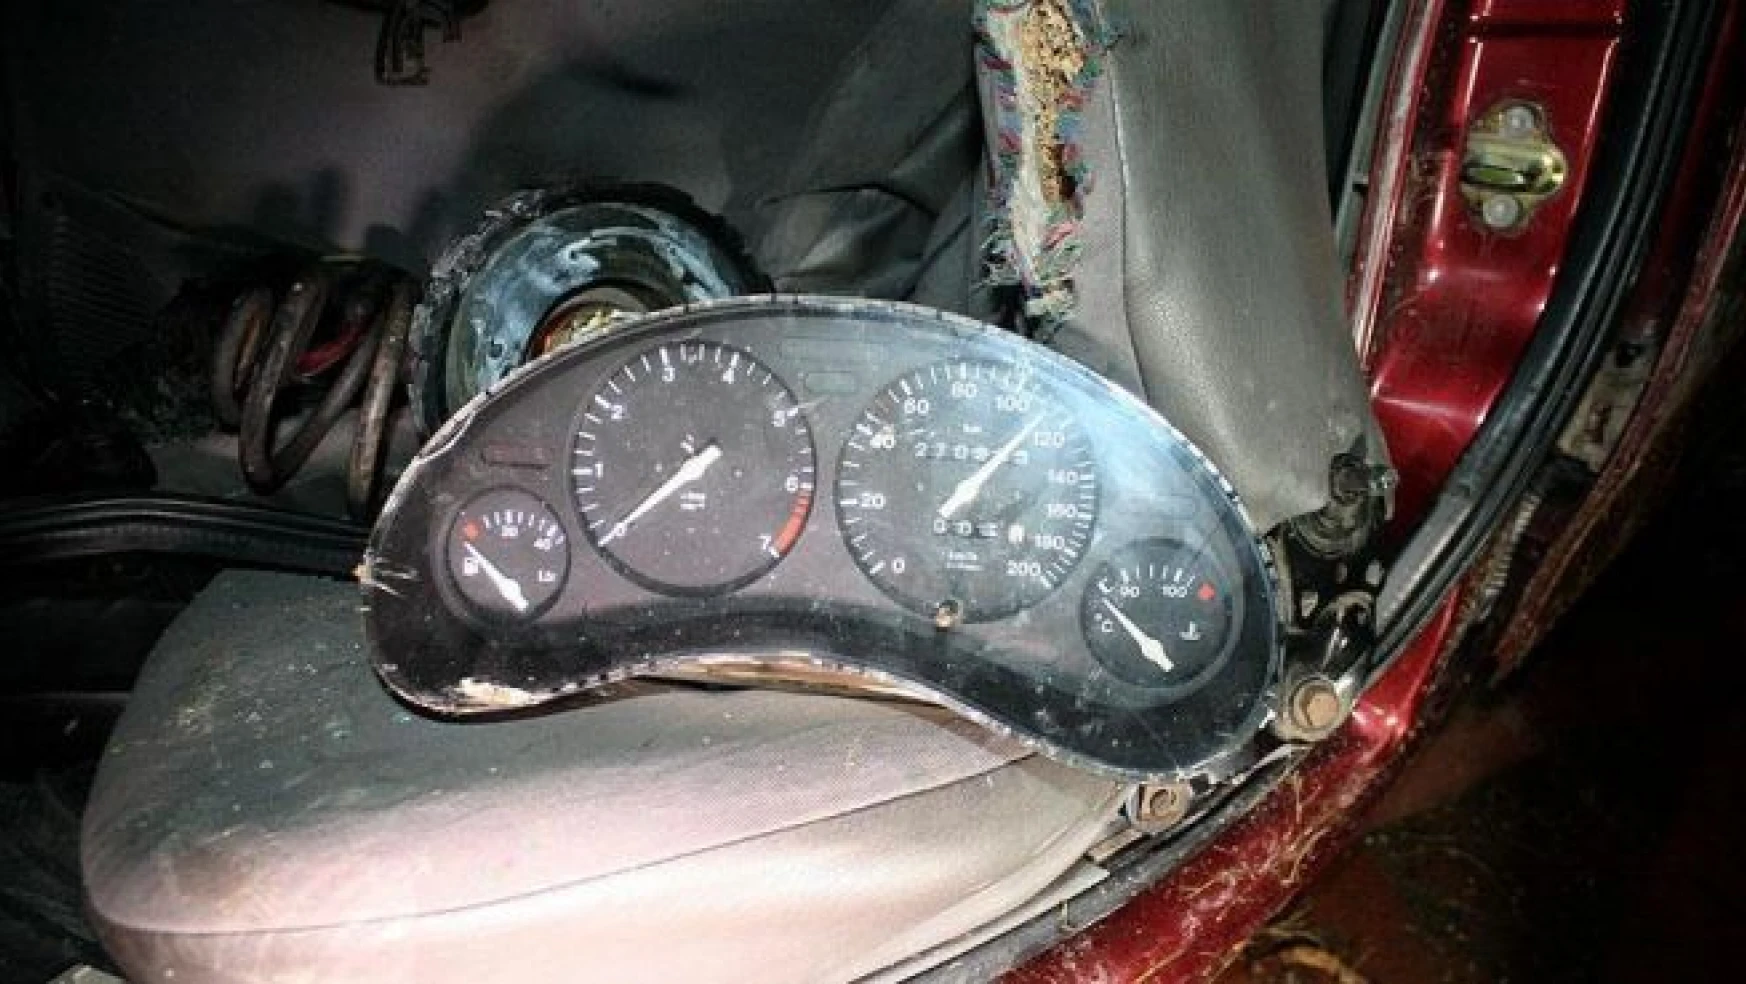 Konya'da otomobil ağaca çarptı: 1 ölü, 1 yaralı